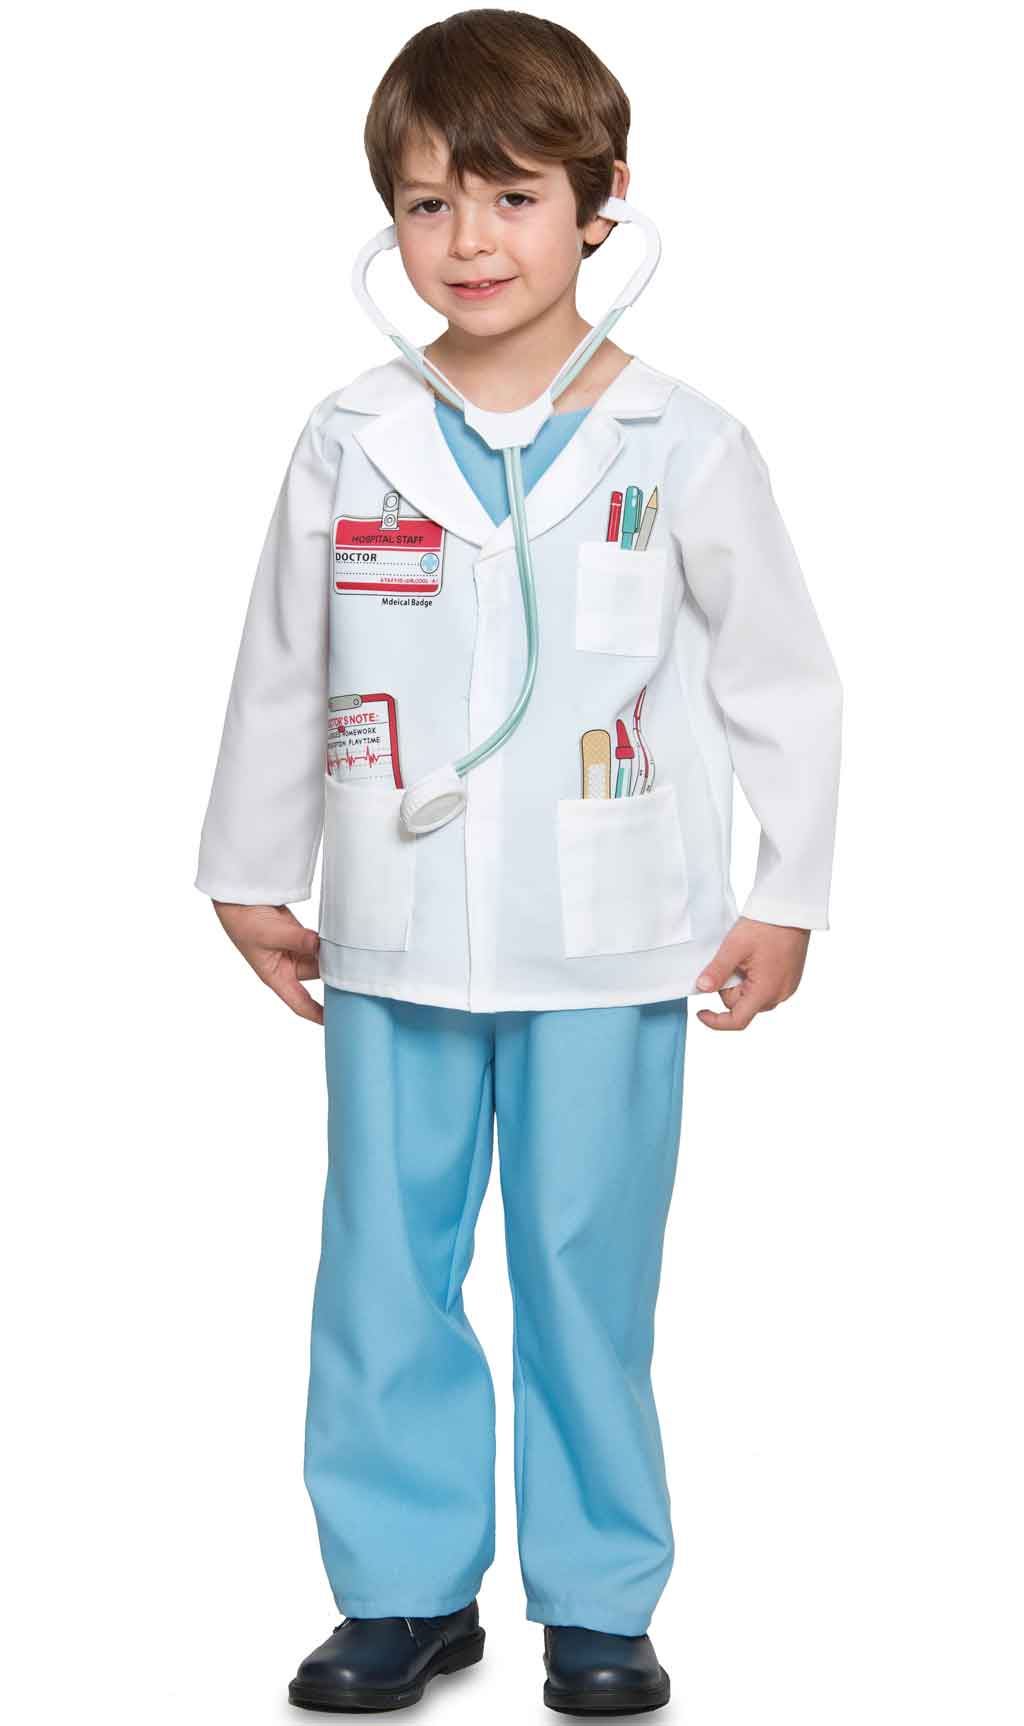 Atticus realeza biografía Disfraz de Doctor con Estetoscopio para niño y niña